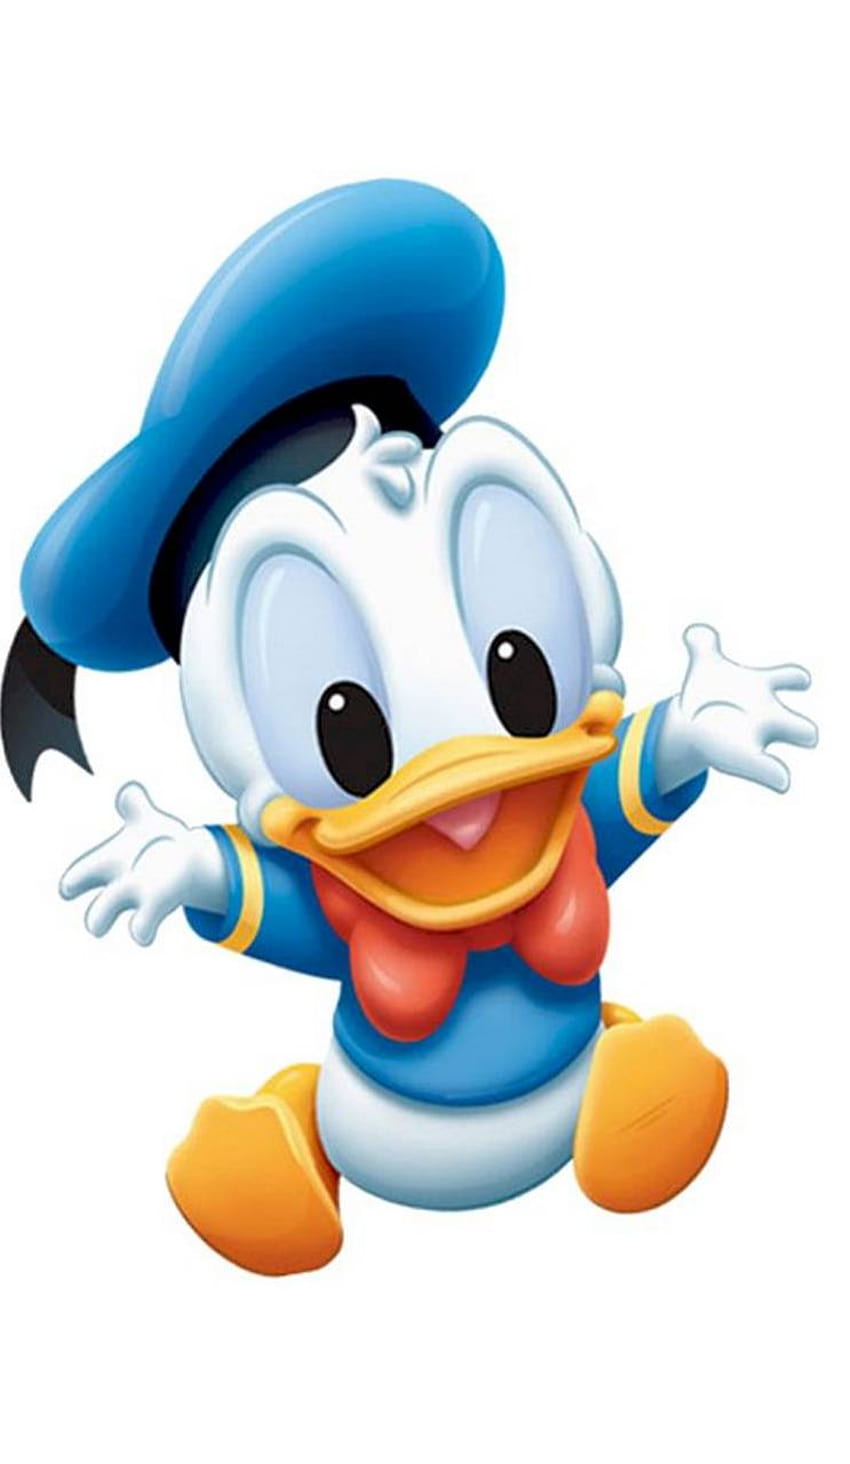 Donald Duck 26203, Donald Duck High Res HD wallpaper | Pxfuel